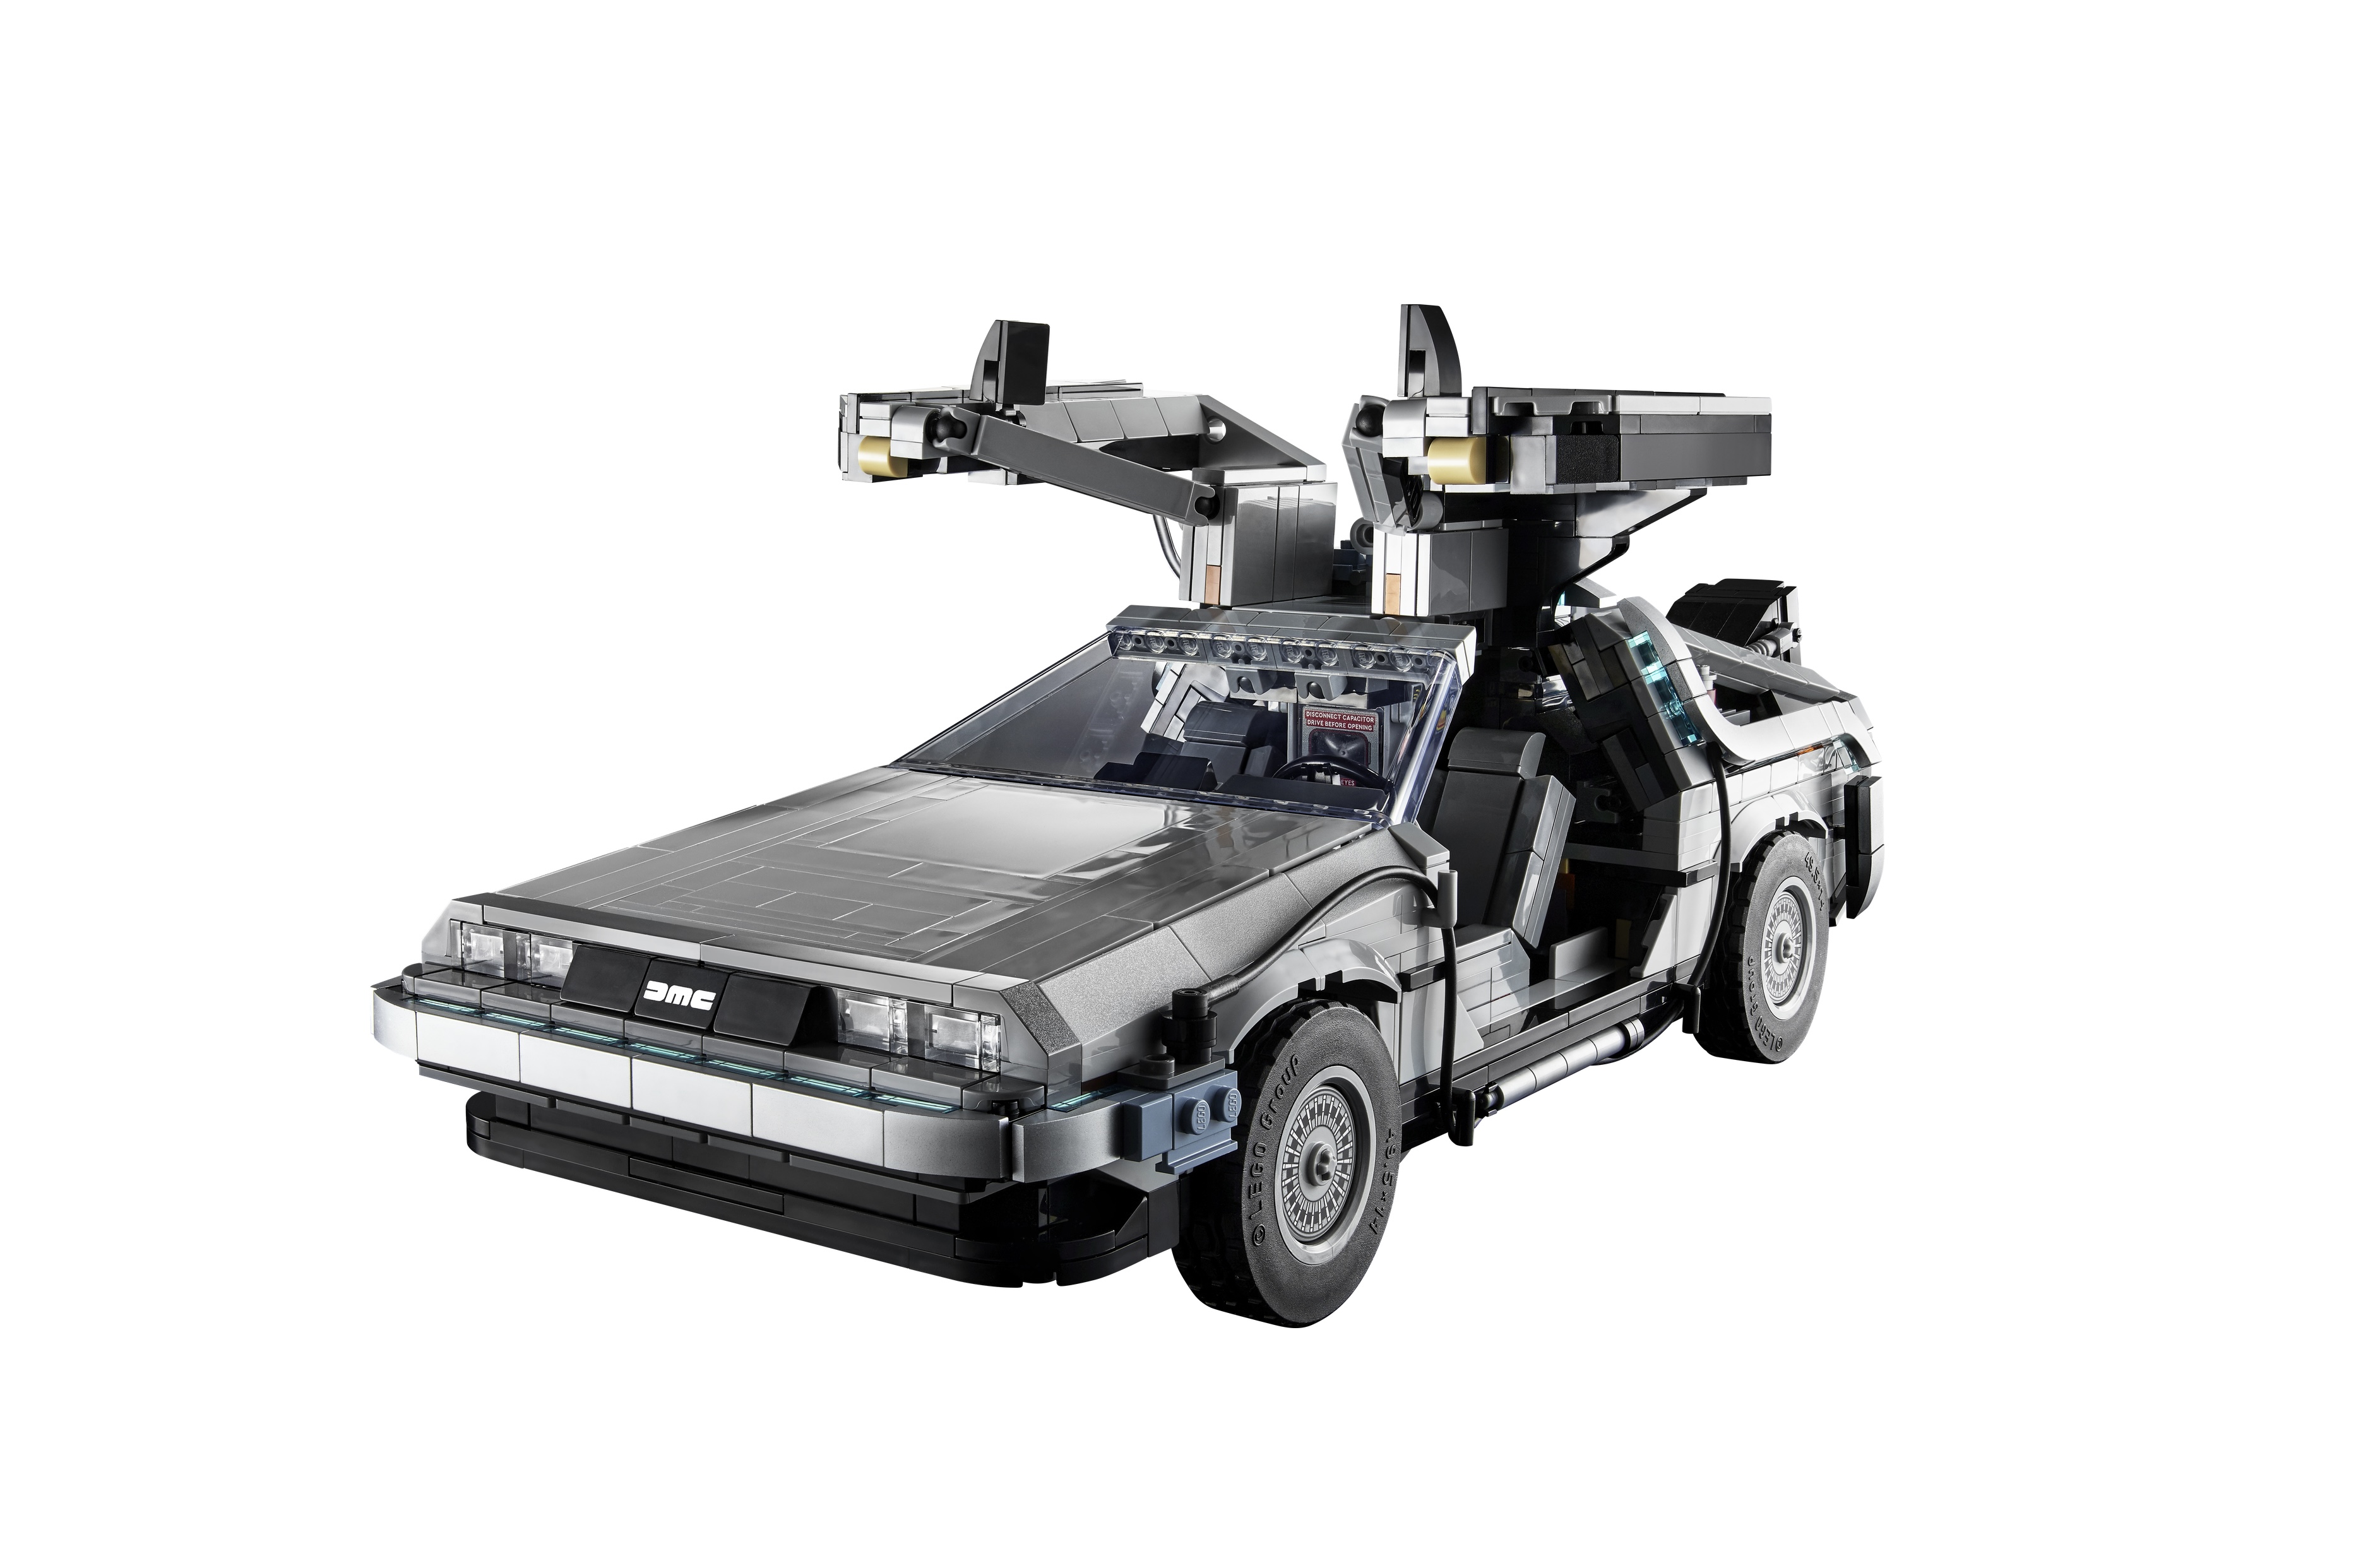 Конструктор «Назад в будущее: Машина времени DeLorean» 63006 (Creator 10300) / 1872 детали